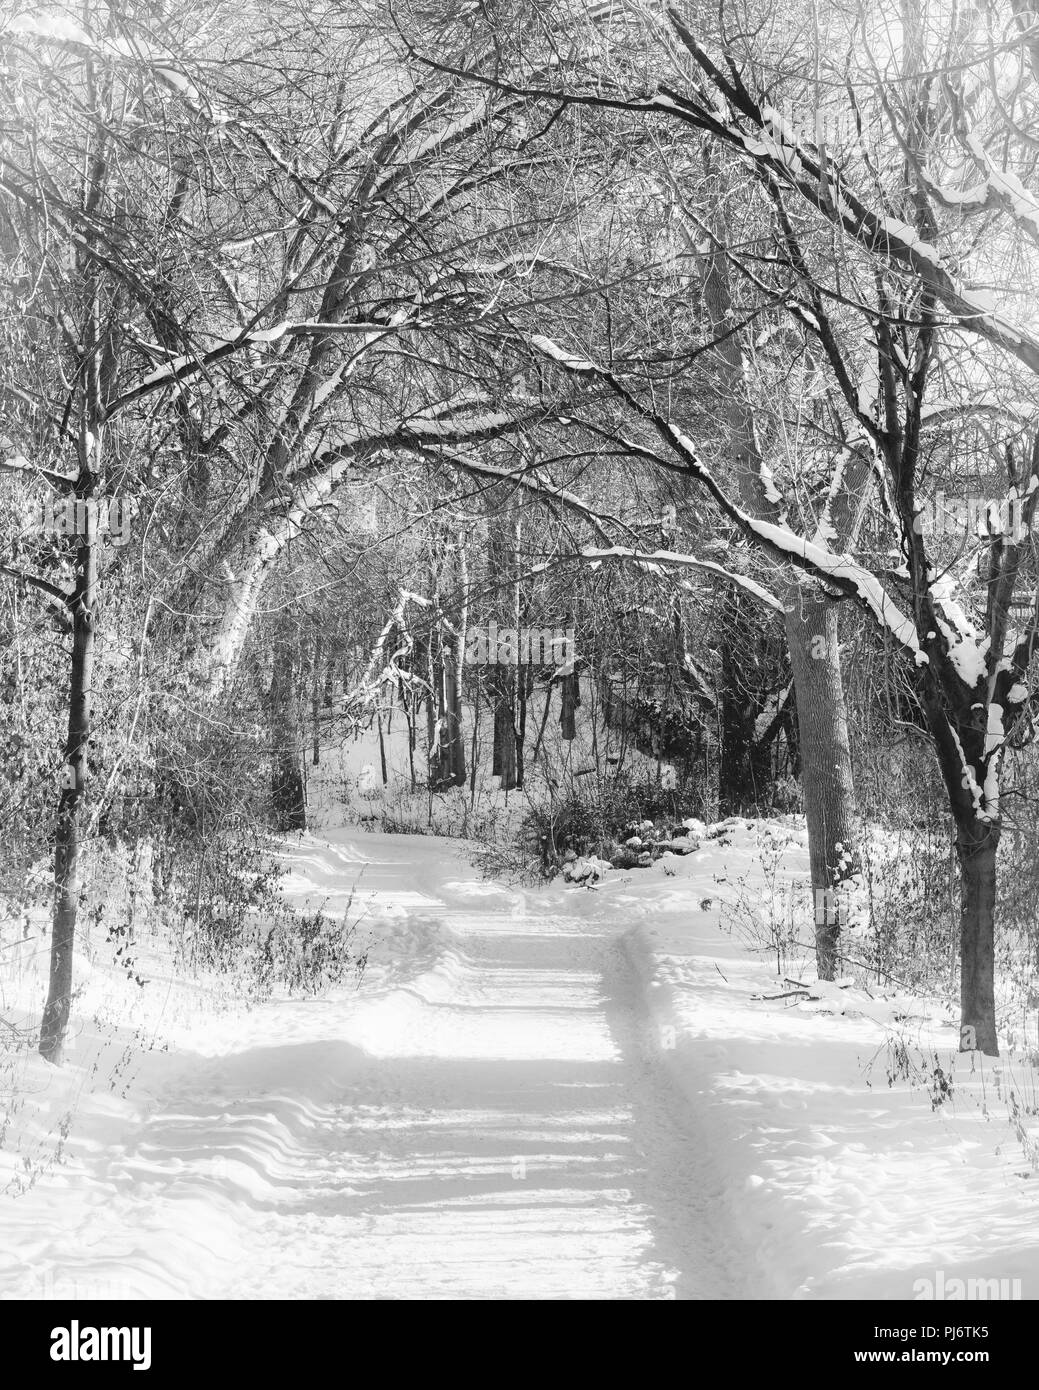 Snowy camino serpenteante a través de un bosque en invierno en blanco y negro Foto de stock